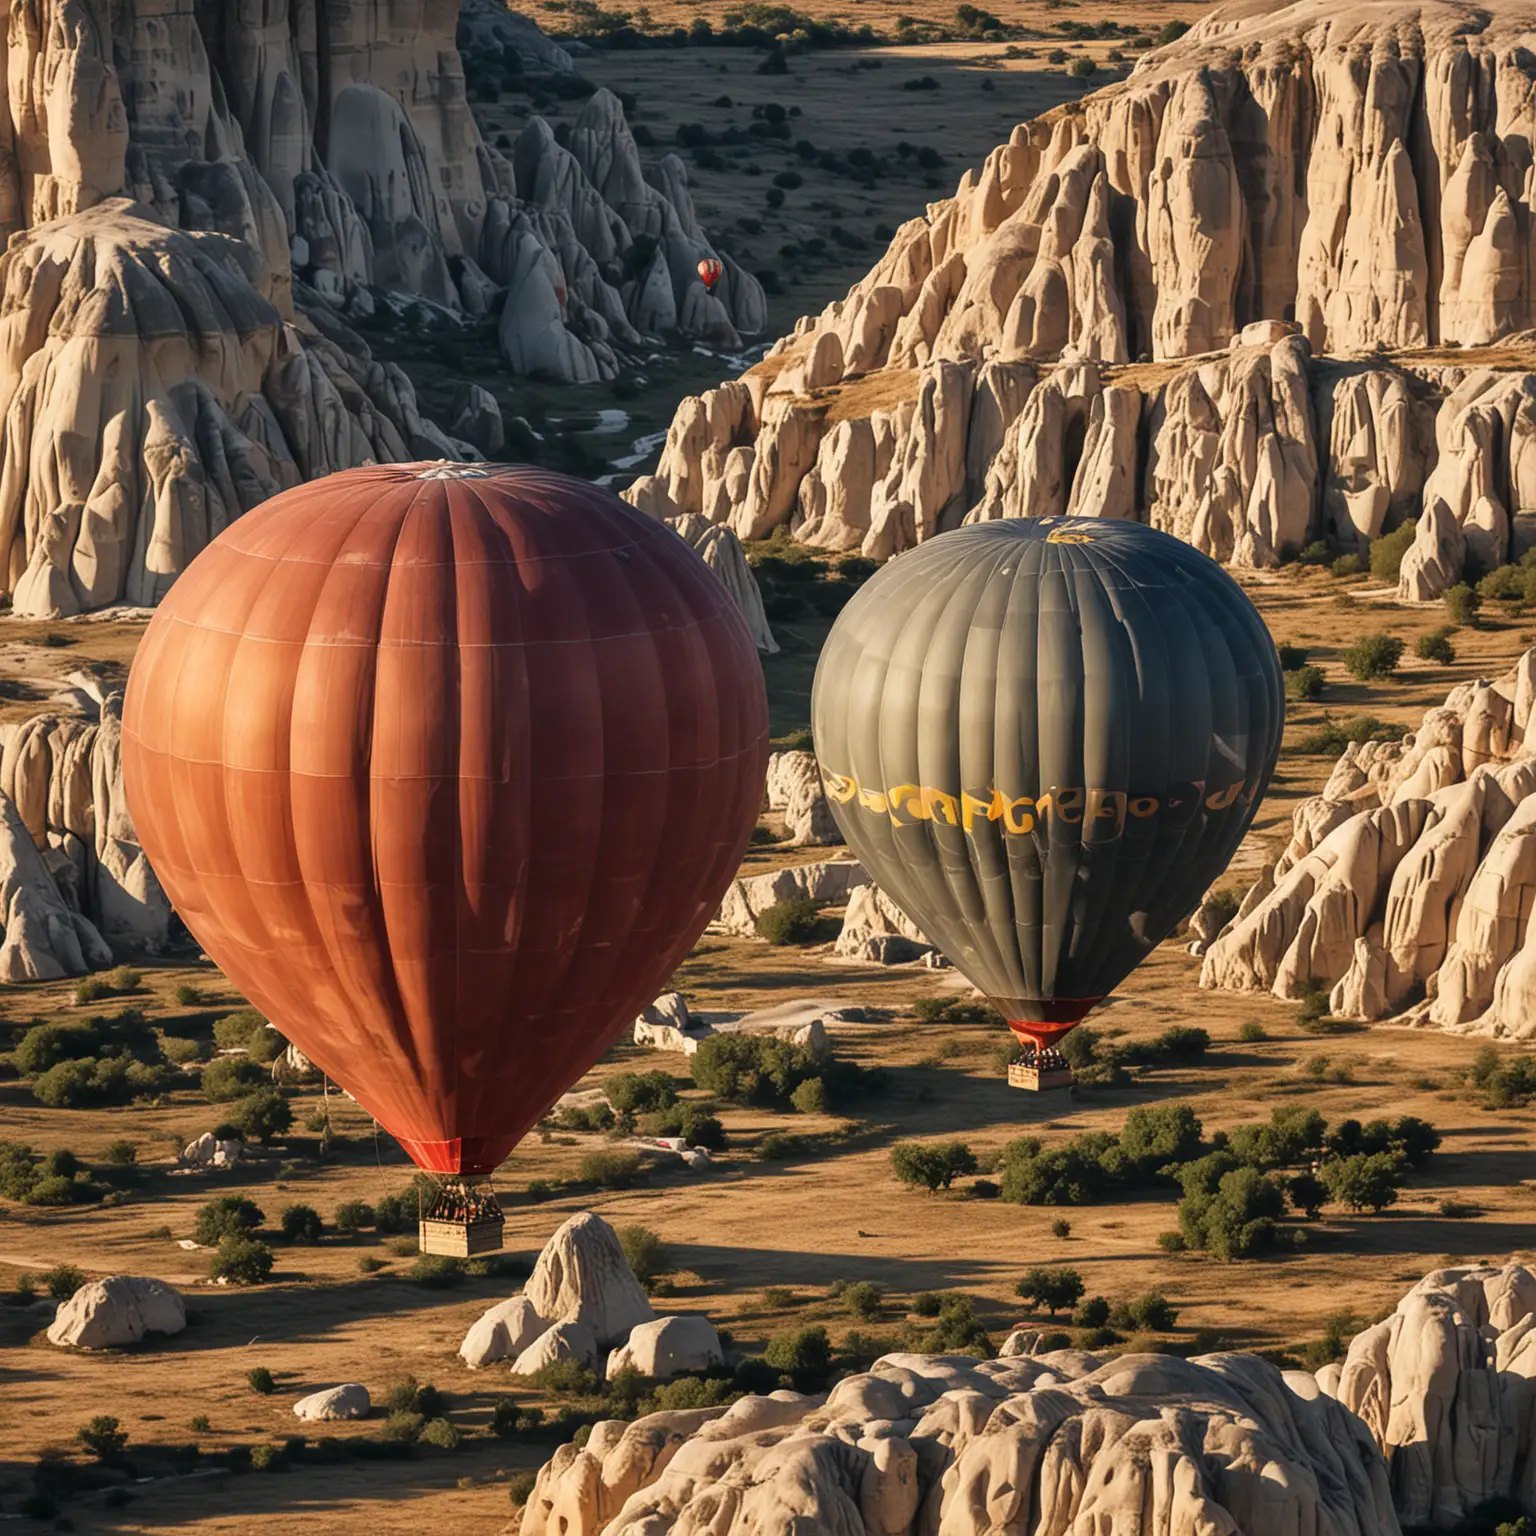 Hot air balloons, close-up view of Capadoccia Turkey